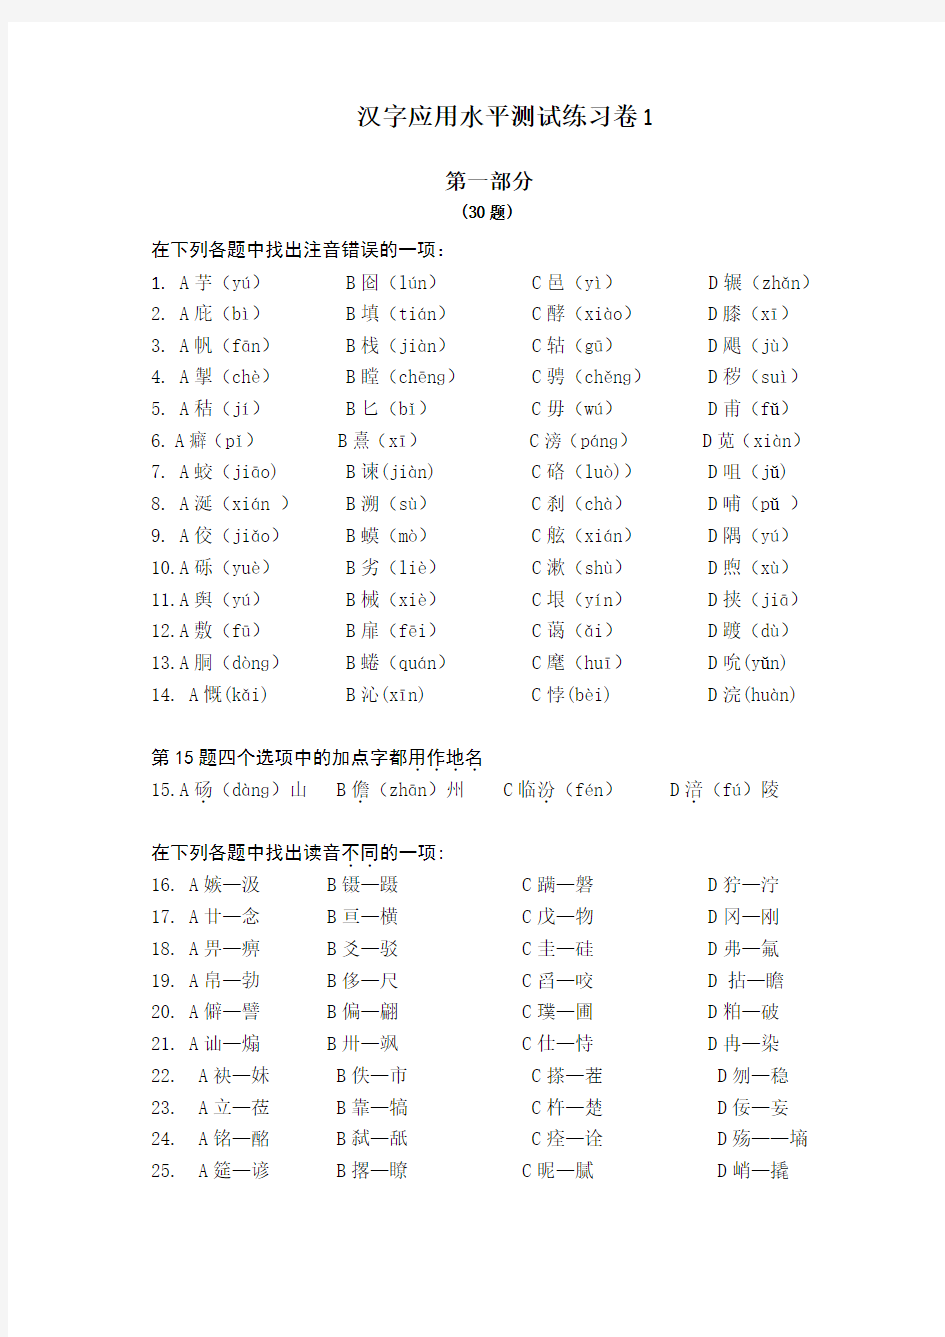 《汉字应用水平测试题》练习试卷及其参考答案 (1)